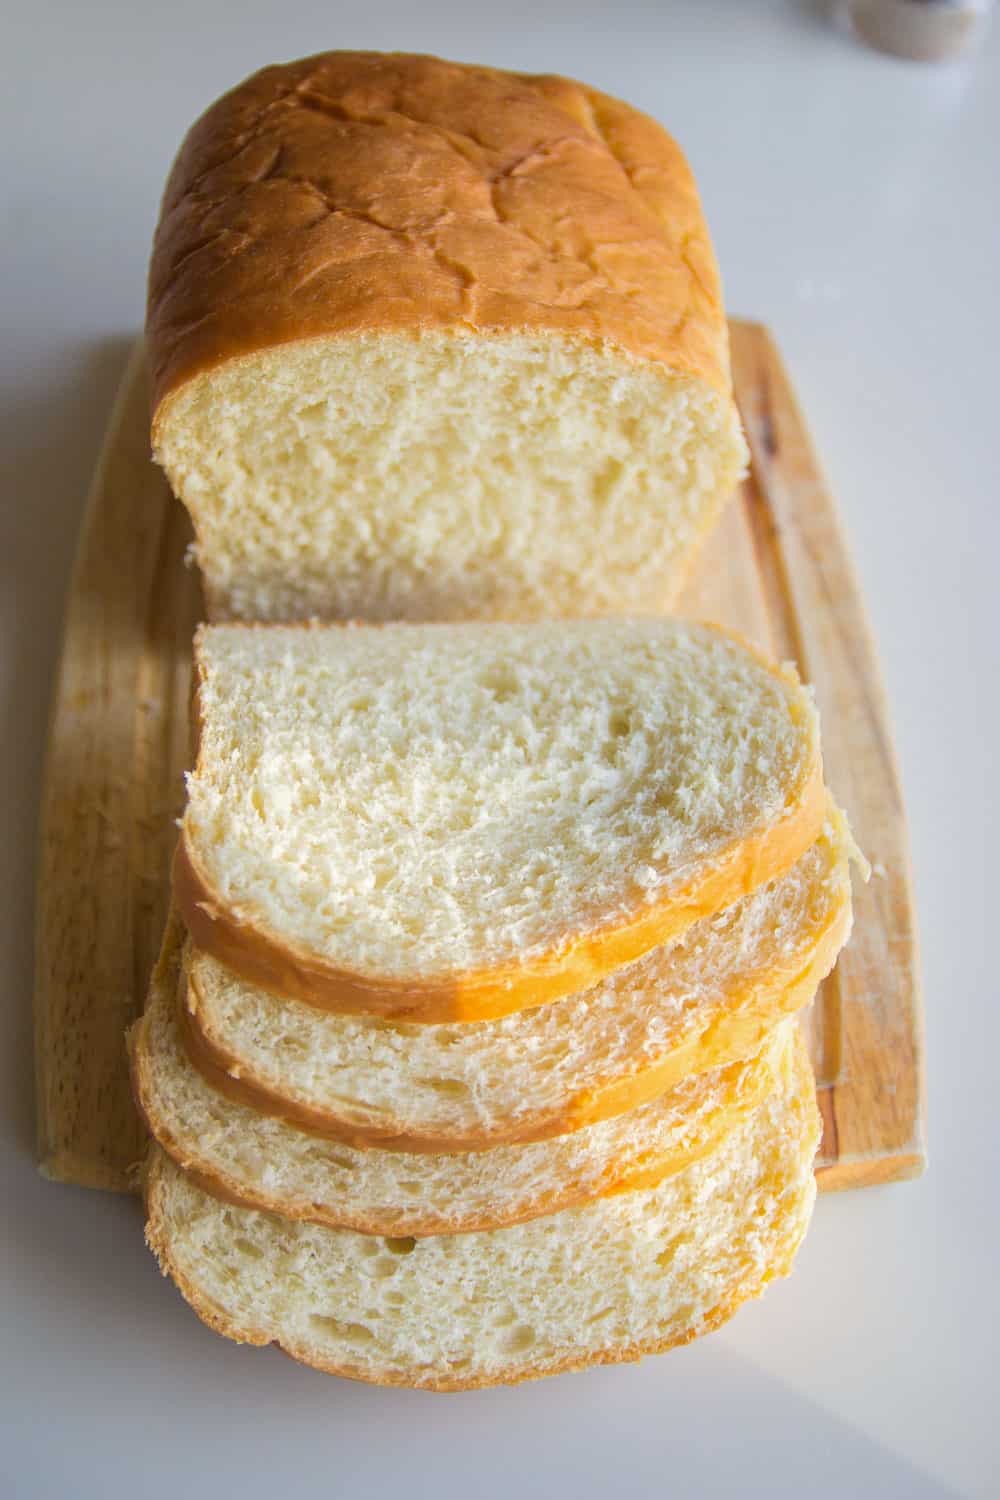 classic white sandwich bread